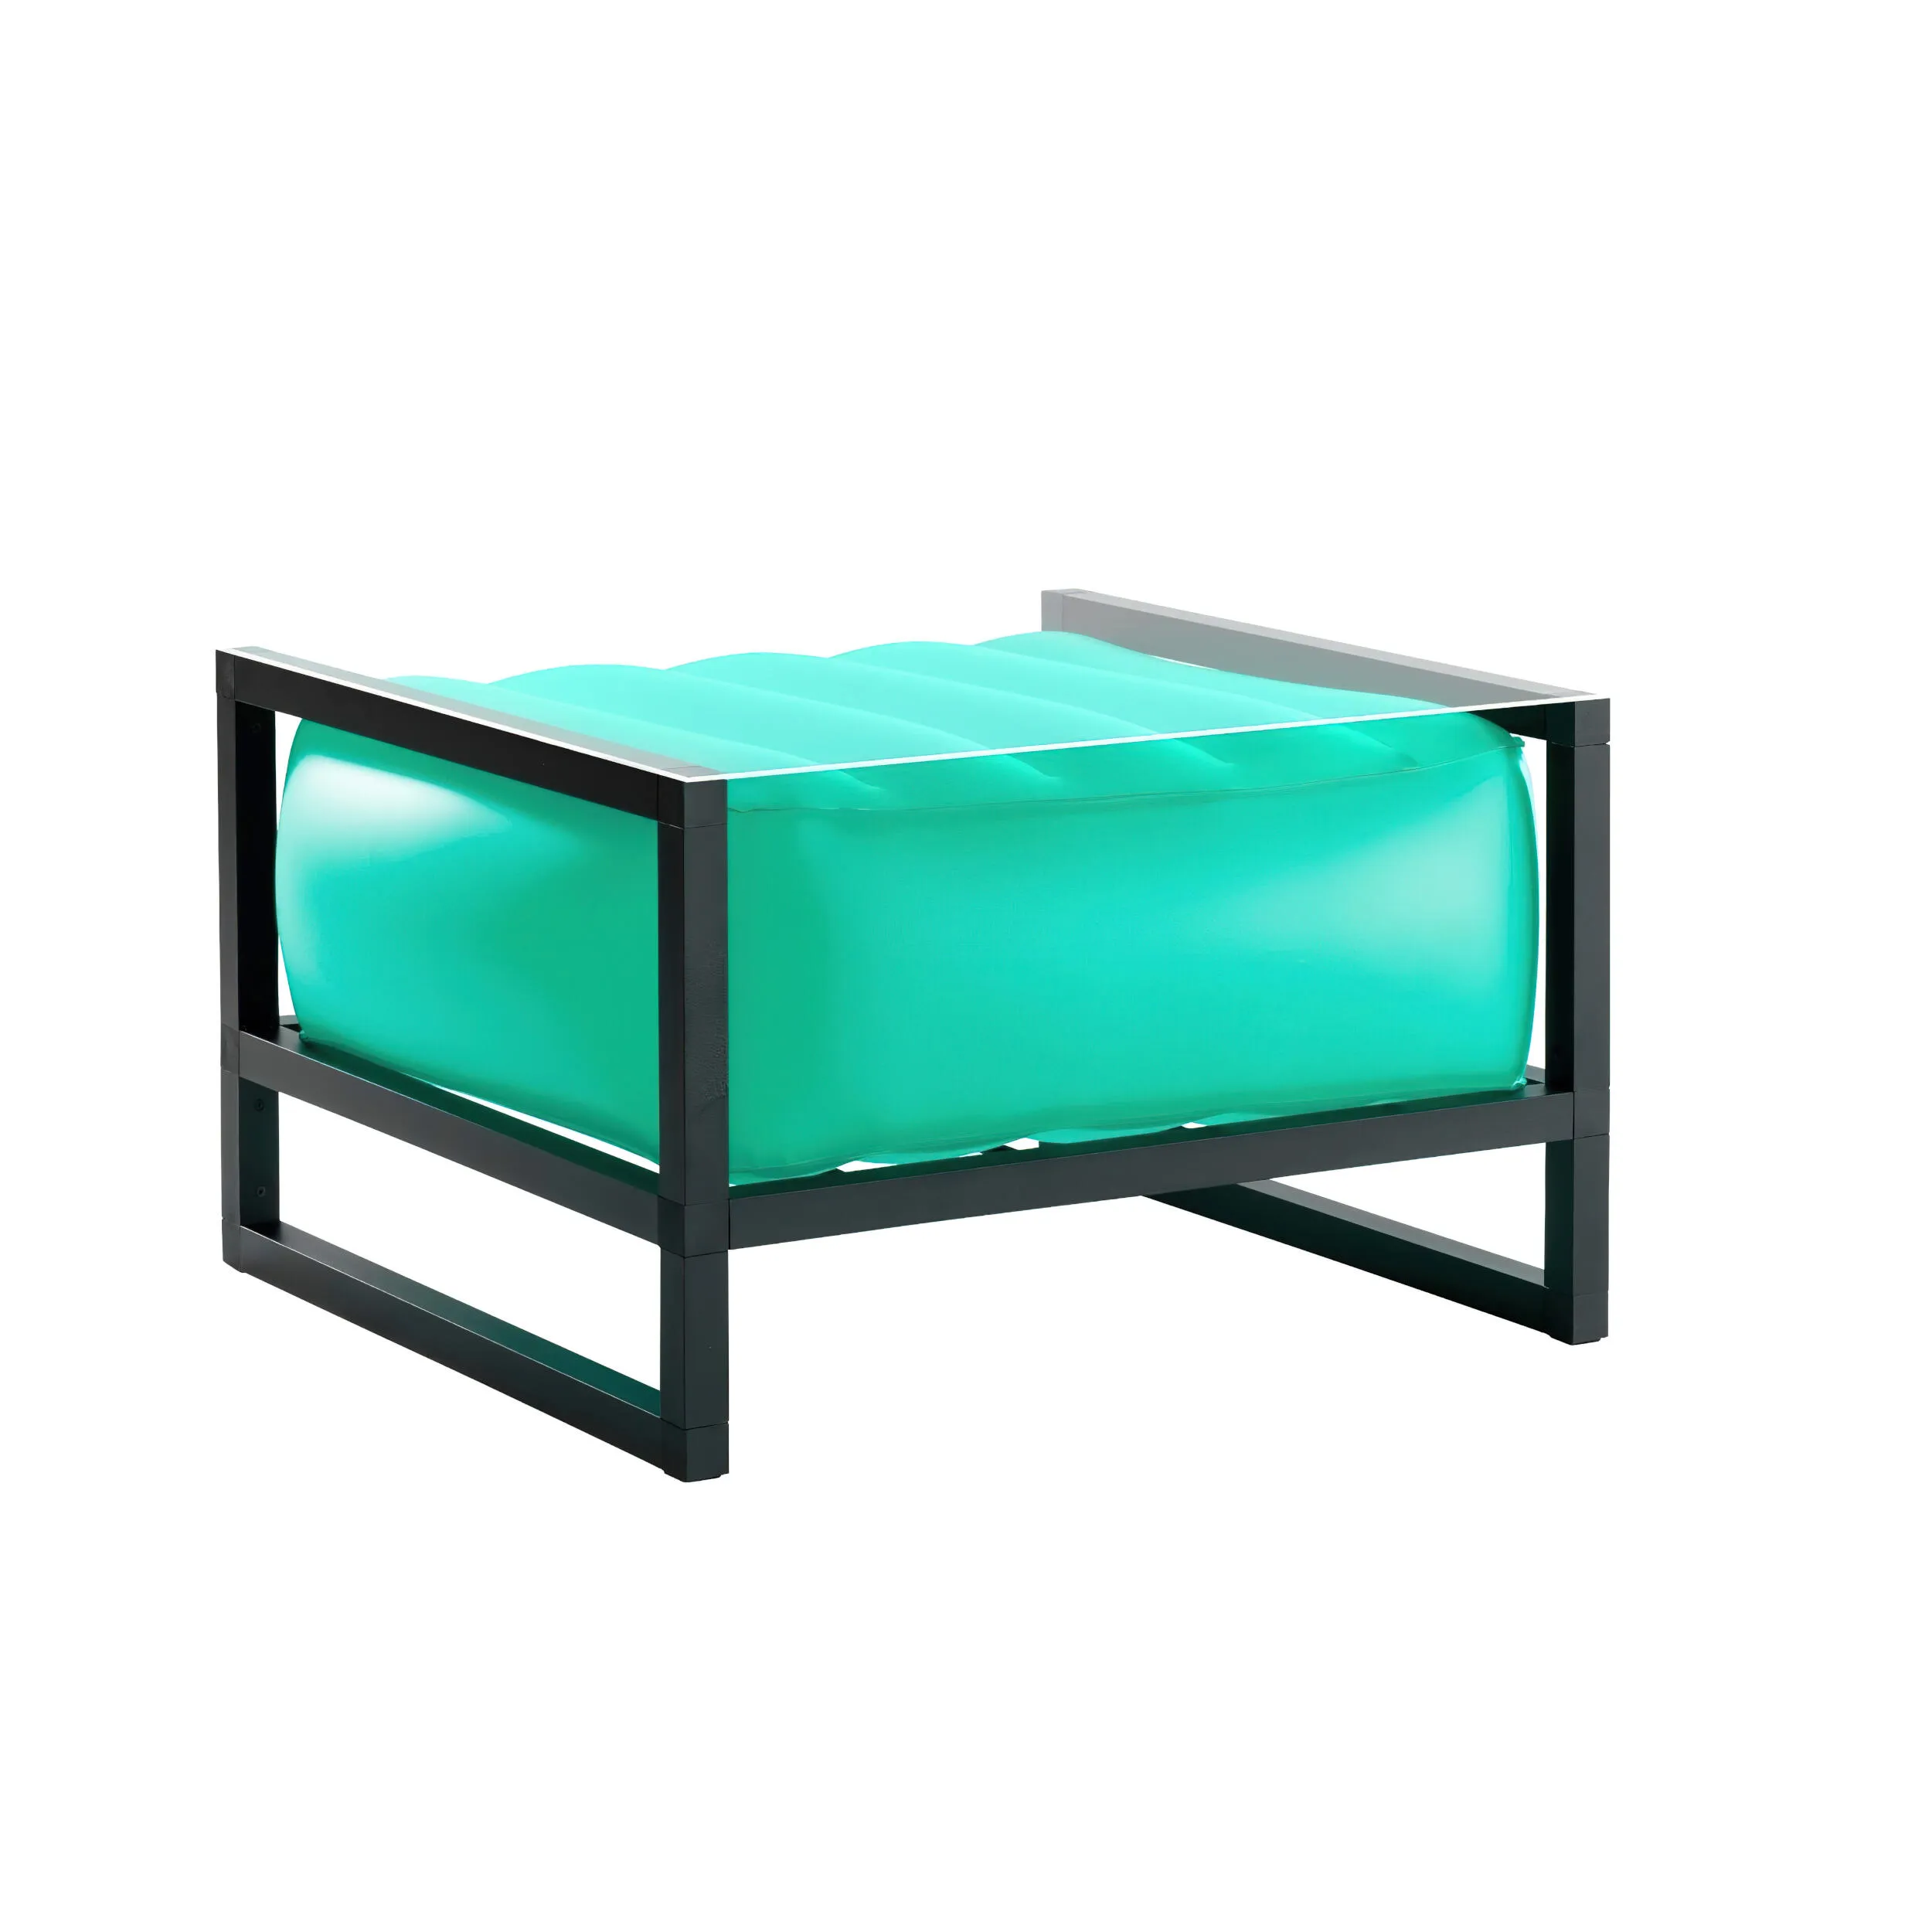 tavolino da salotto Yomi eko illuminato struttura in legno nero, dimensioni 62x70xH40 cm peso 14 kg, seduta gonfiabile in TPU colore verde traslucido